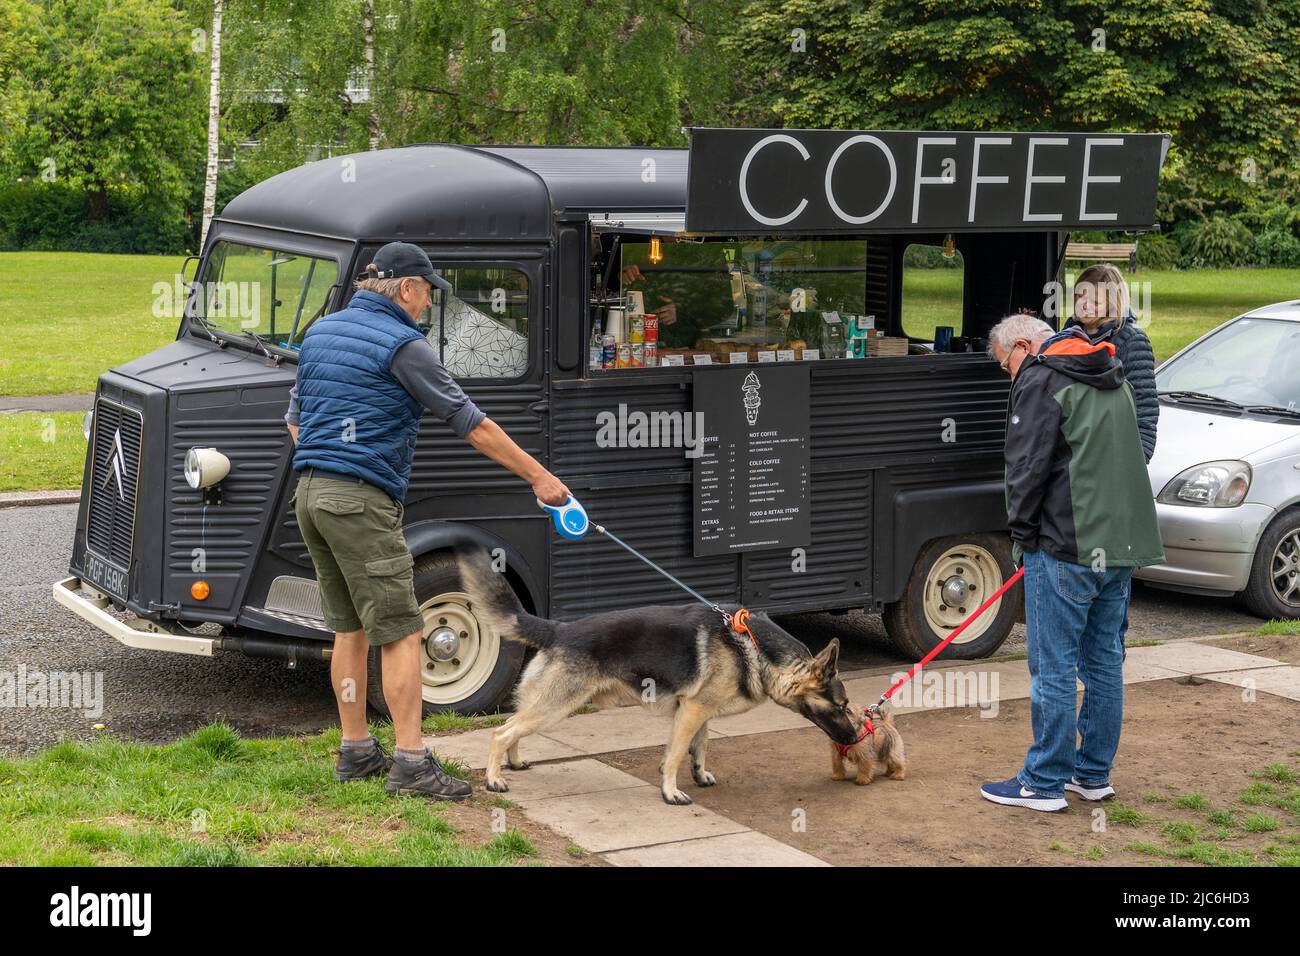 El perro grande se encuentra con el perro pequeño en una camioneta de café en Gosforth, Newcastle upon Tyne, Reino Unido. Foto de stock